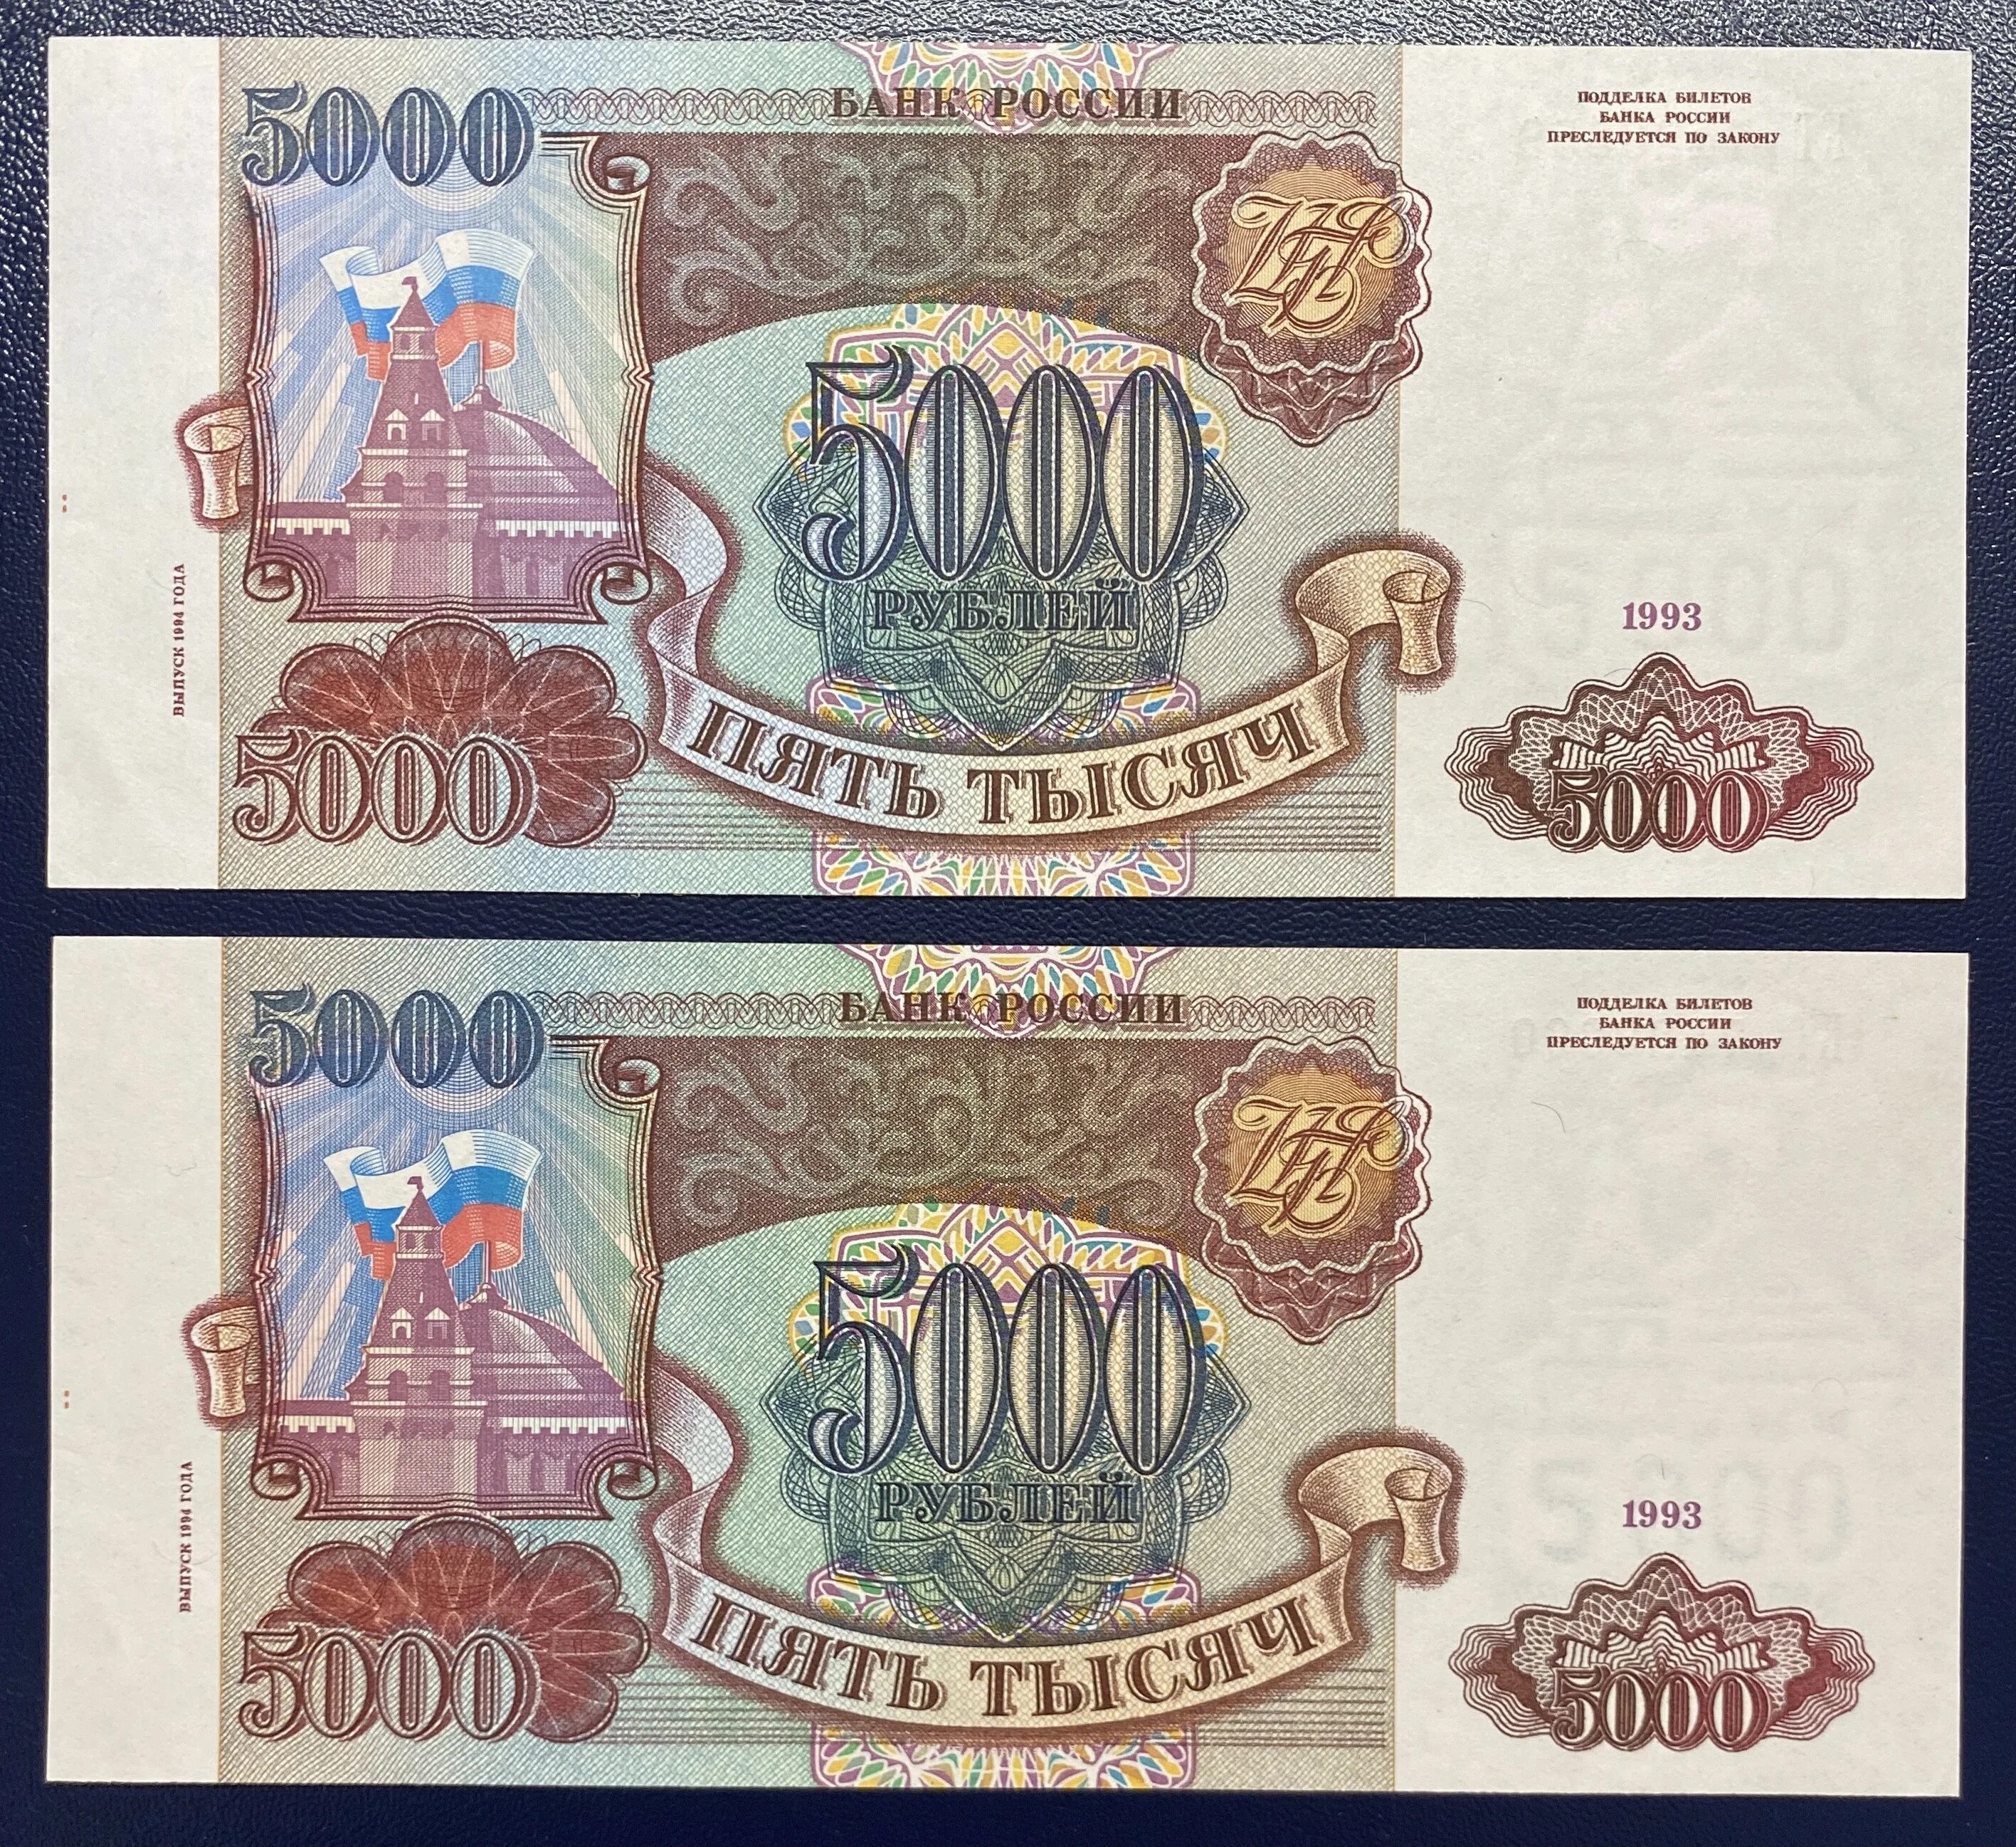 5000 Рублей 1993 и 1994 отличия. 5000 Рублей 1993 года бумажные. 5000 Руб.1993г.